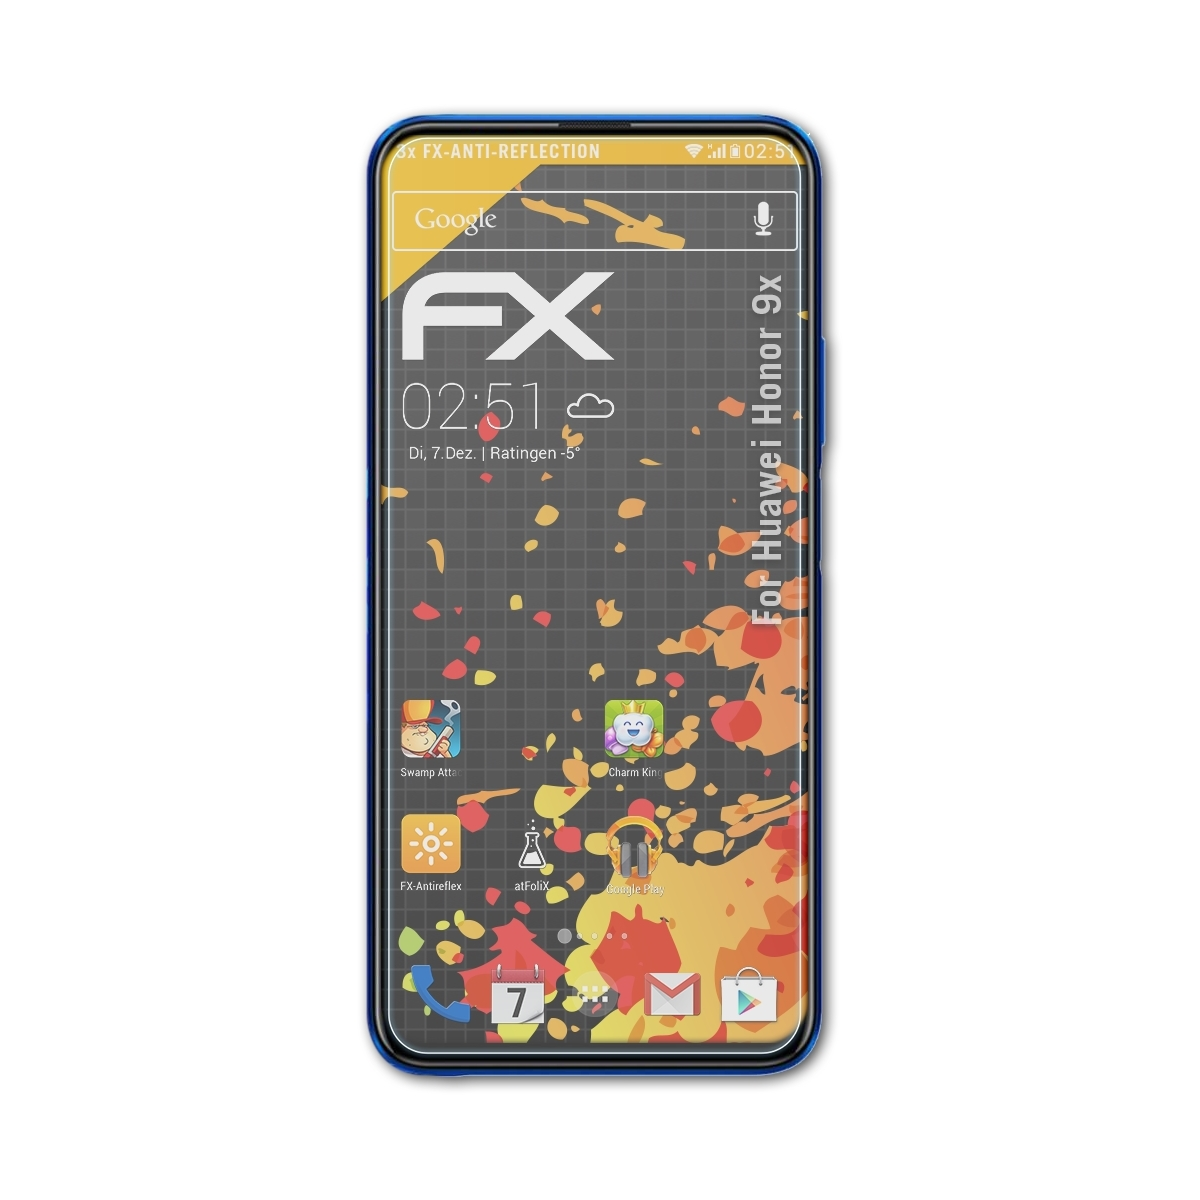 ATFOLIX 3x FX-Antireflex Displayschutz(für Huawei Honor 9x)